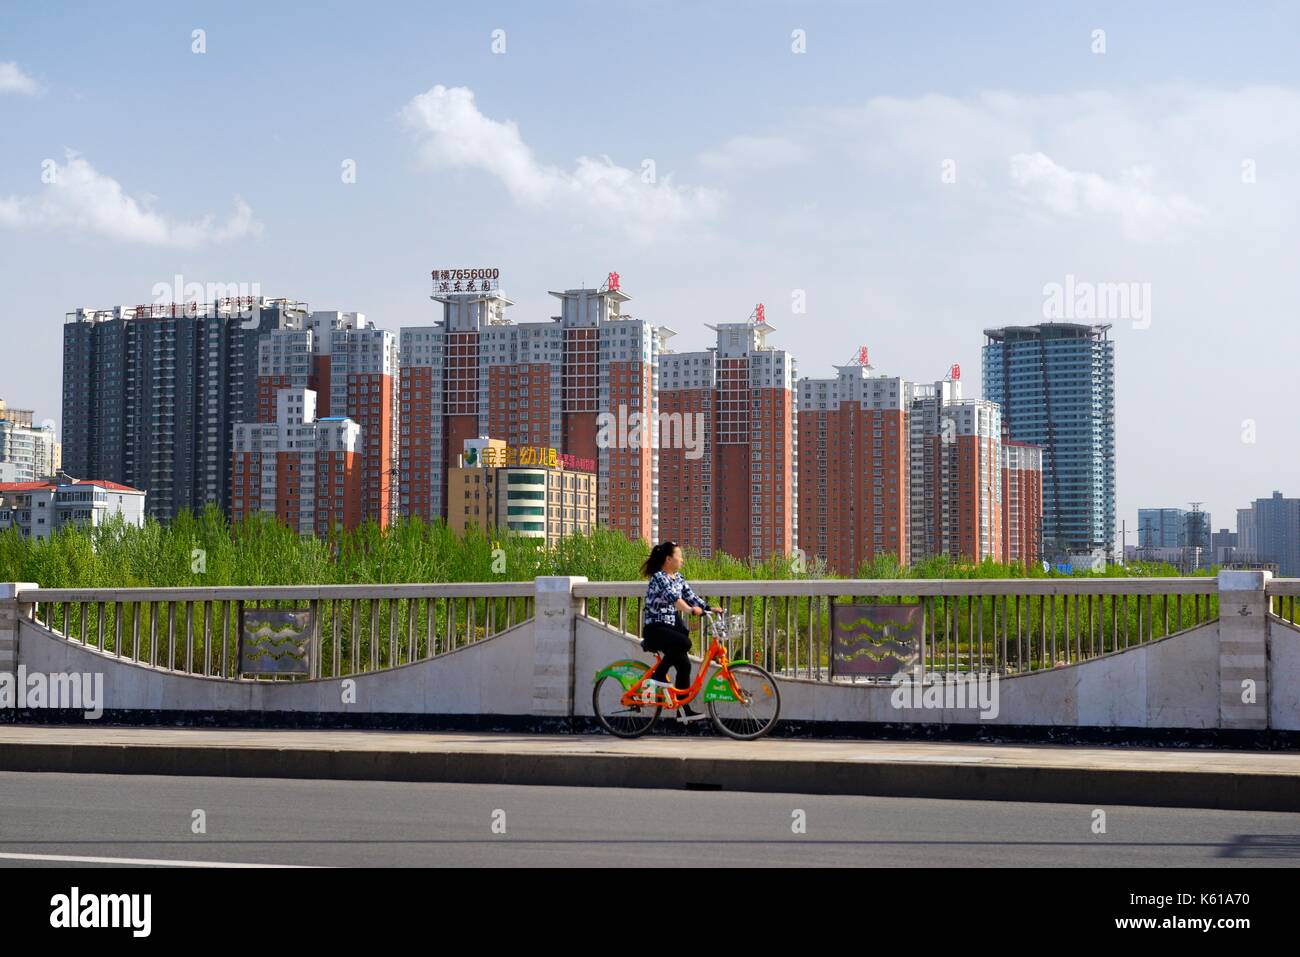 Cambio post-industrial de la ciudad de Taiyuan, Shanxi, China. ciclista bicicleta paseos compartir en claro aire limpio pasado nuevos bloques de apartamentos Foto de stock